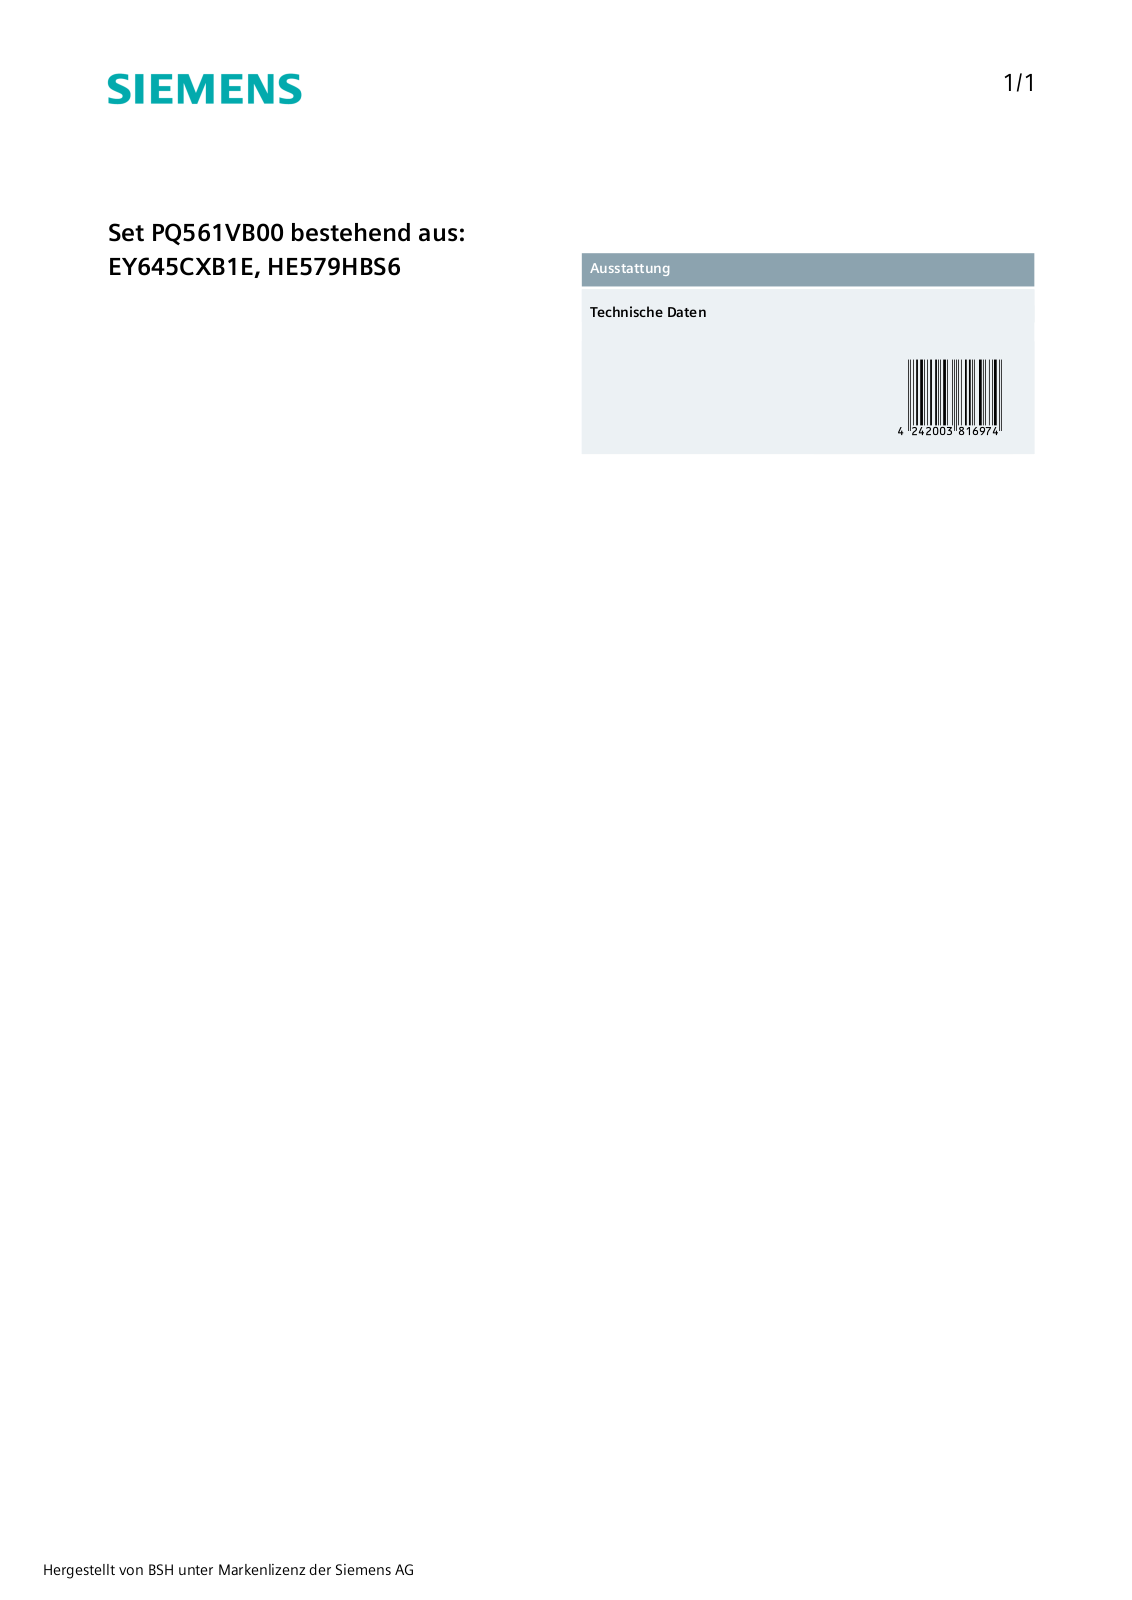 Siemens PQ561VB00 User Manual